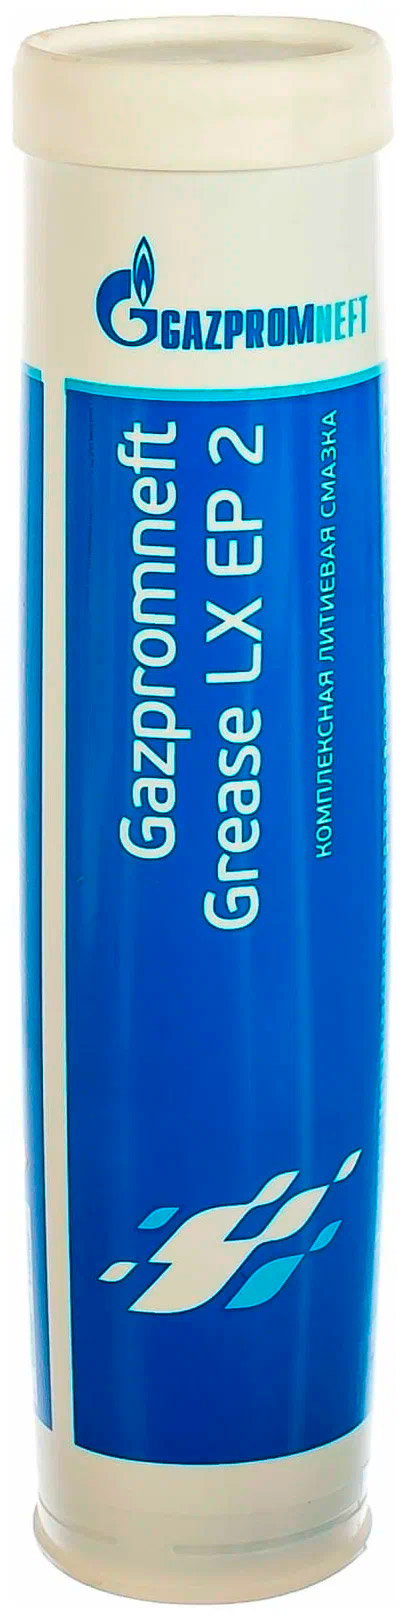 Присадки / Автохимия Gazpromneft Grease LX EP 2 400гр смазка синяя